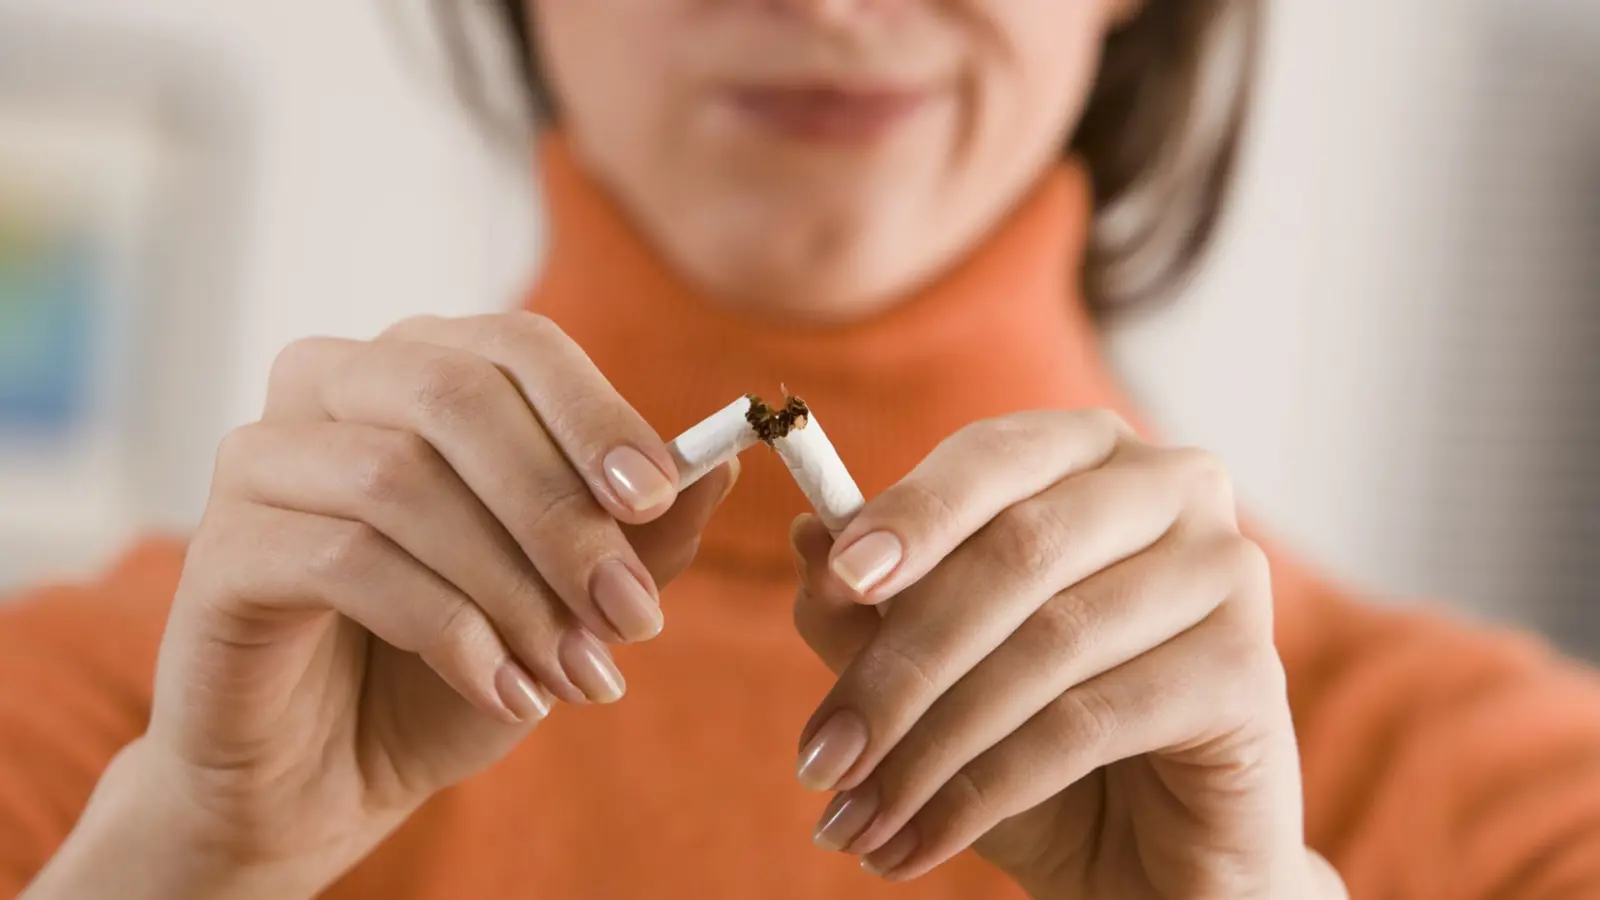 لماذا يجب عليكِ التوقف عن التدخين الآن؟ اكتشفي الفوائد الصحية العديدة